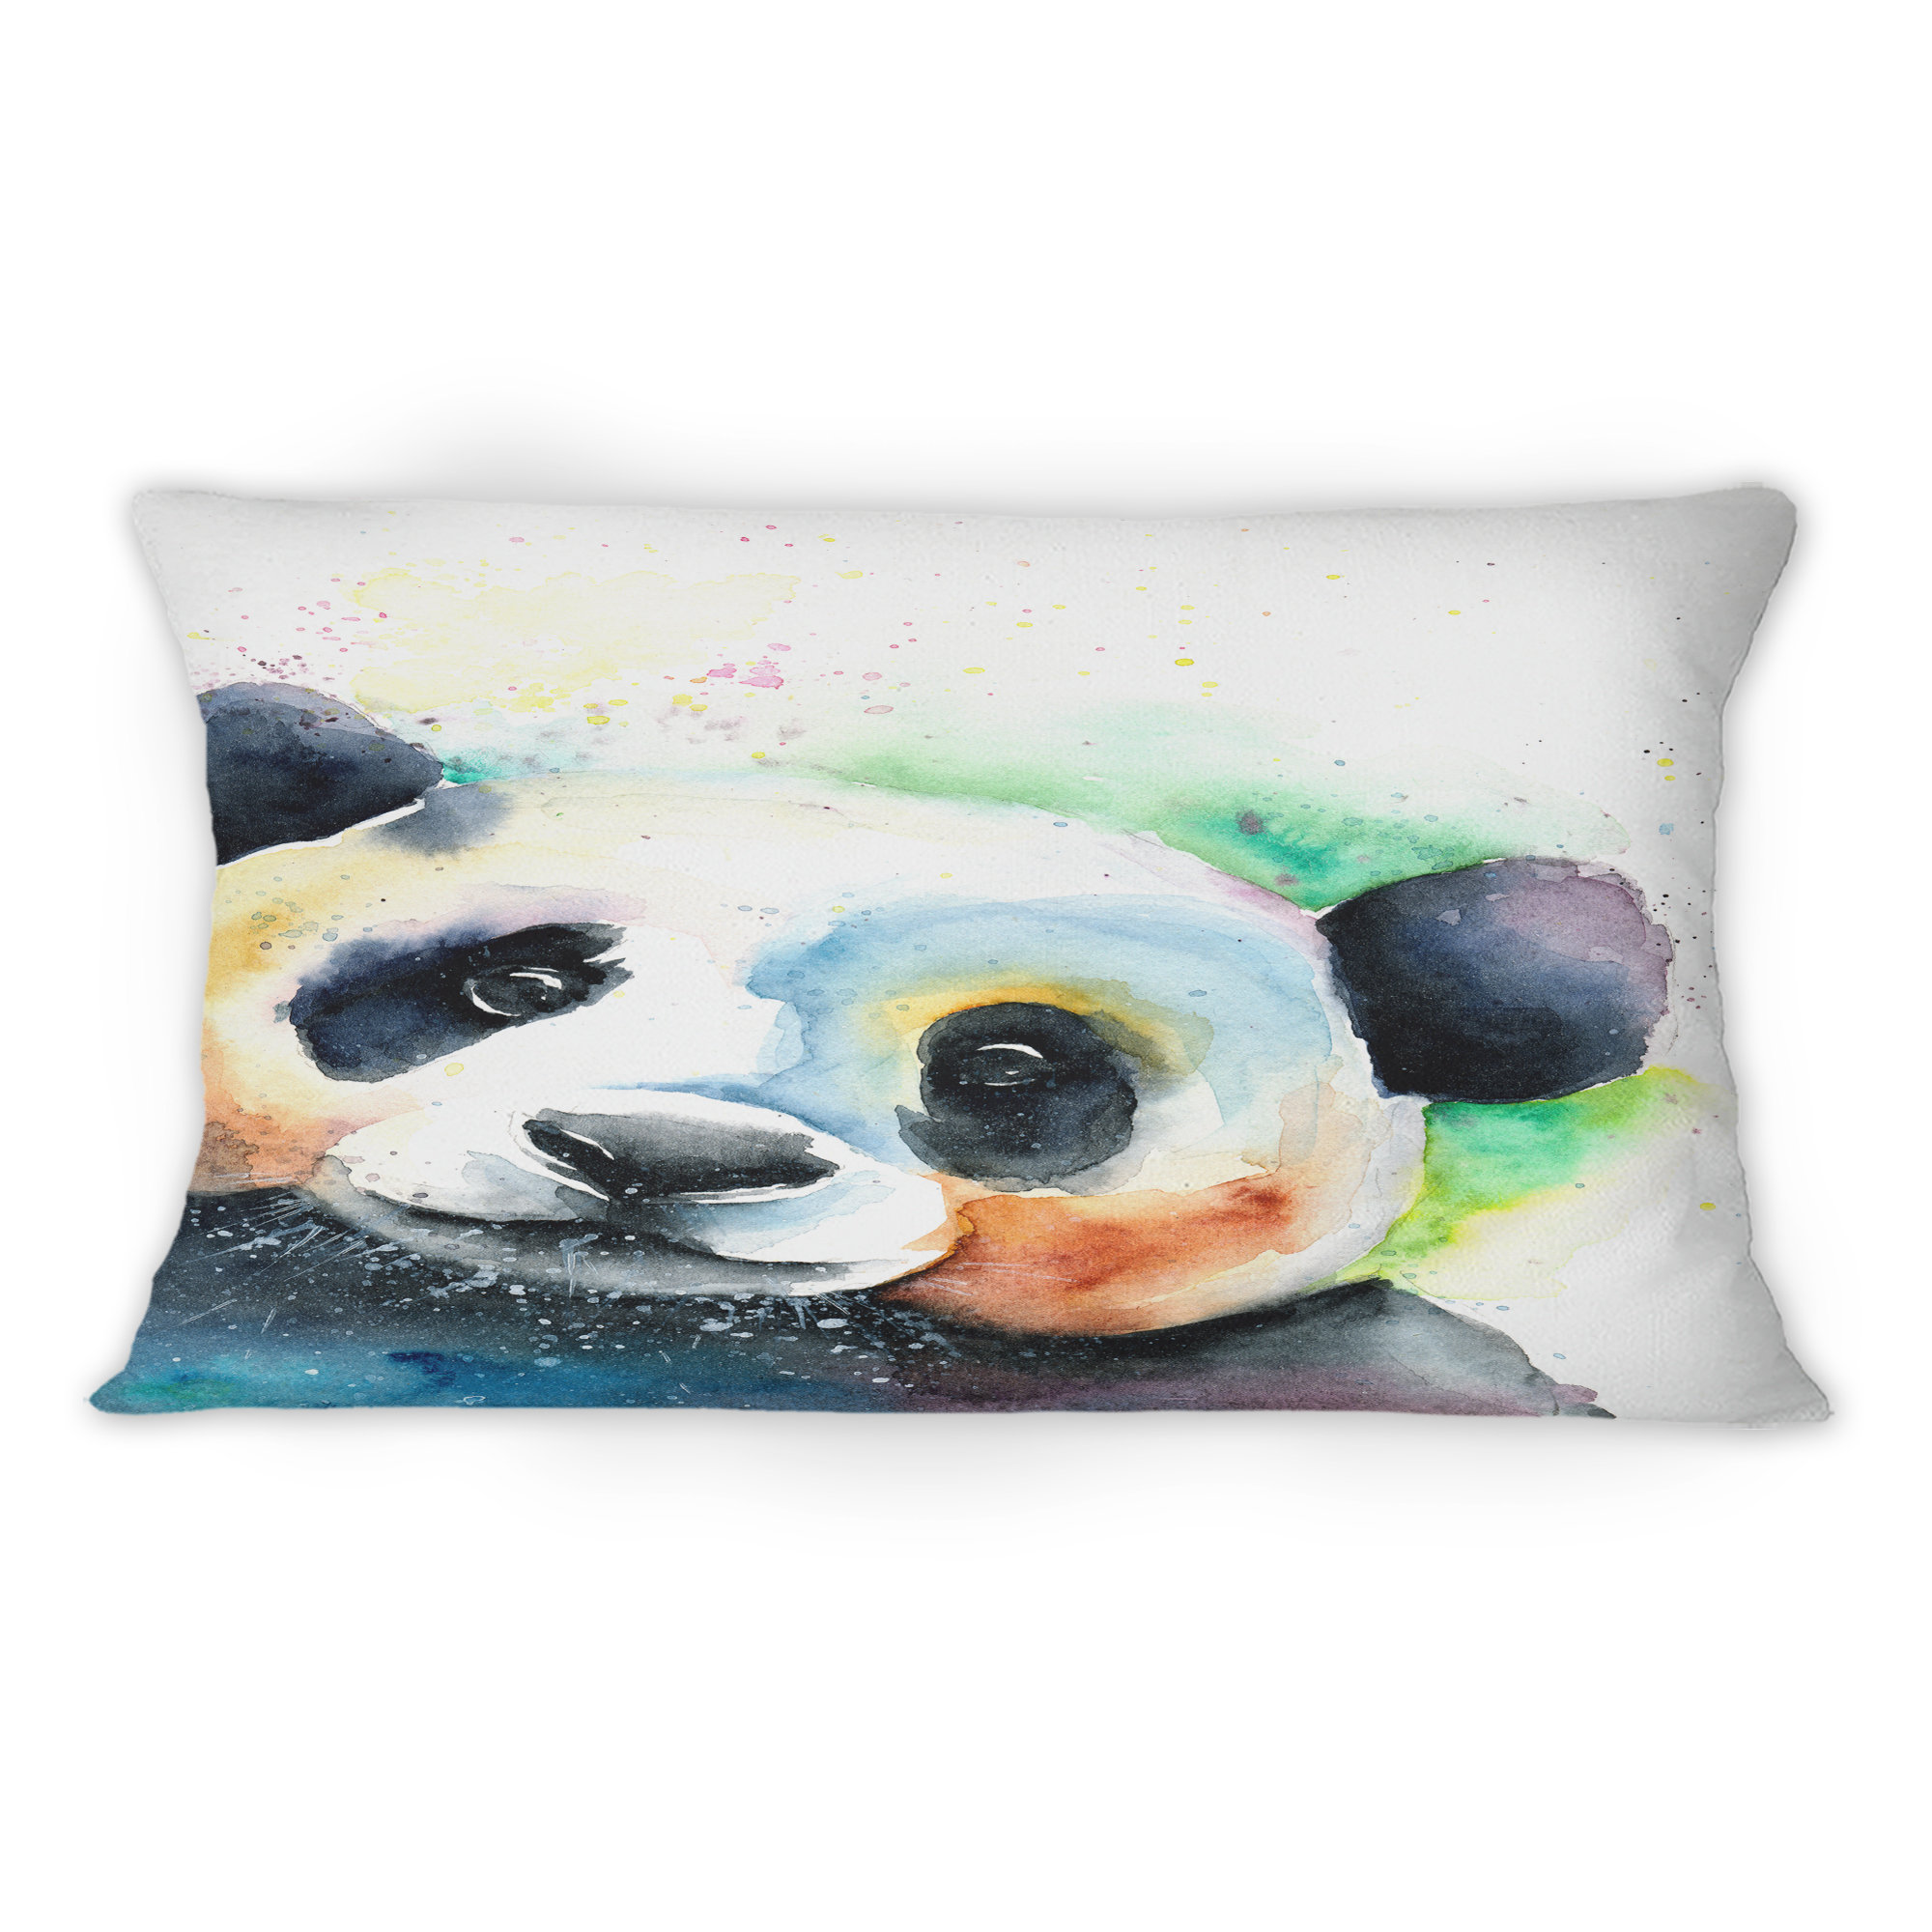 Lampshades Ideal To Match Panda Duvets Covers Panda Wall Decals & Panda Cushions 